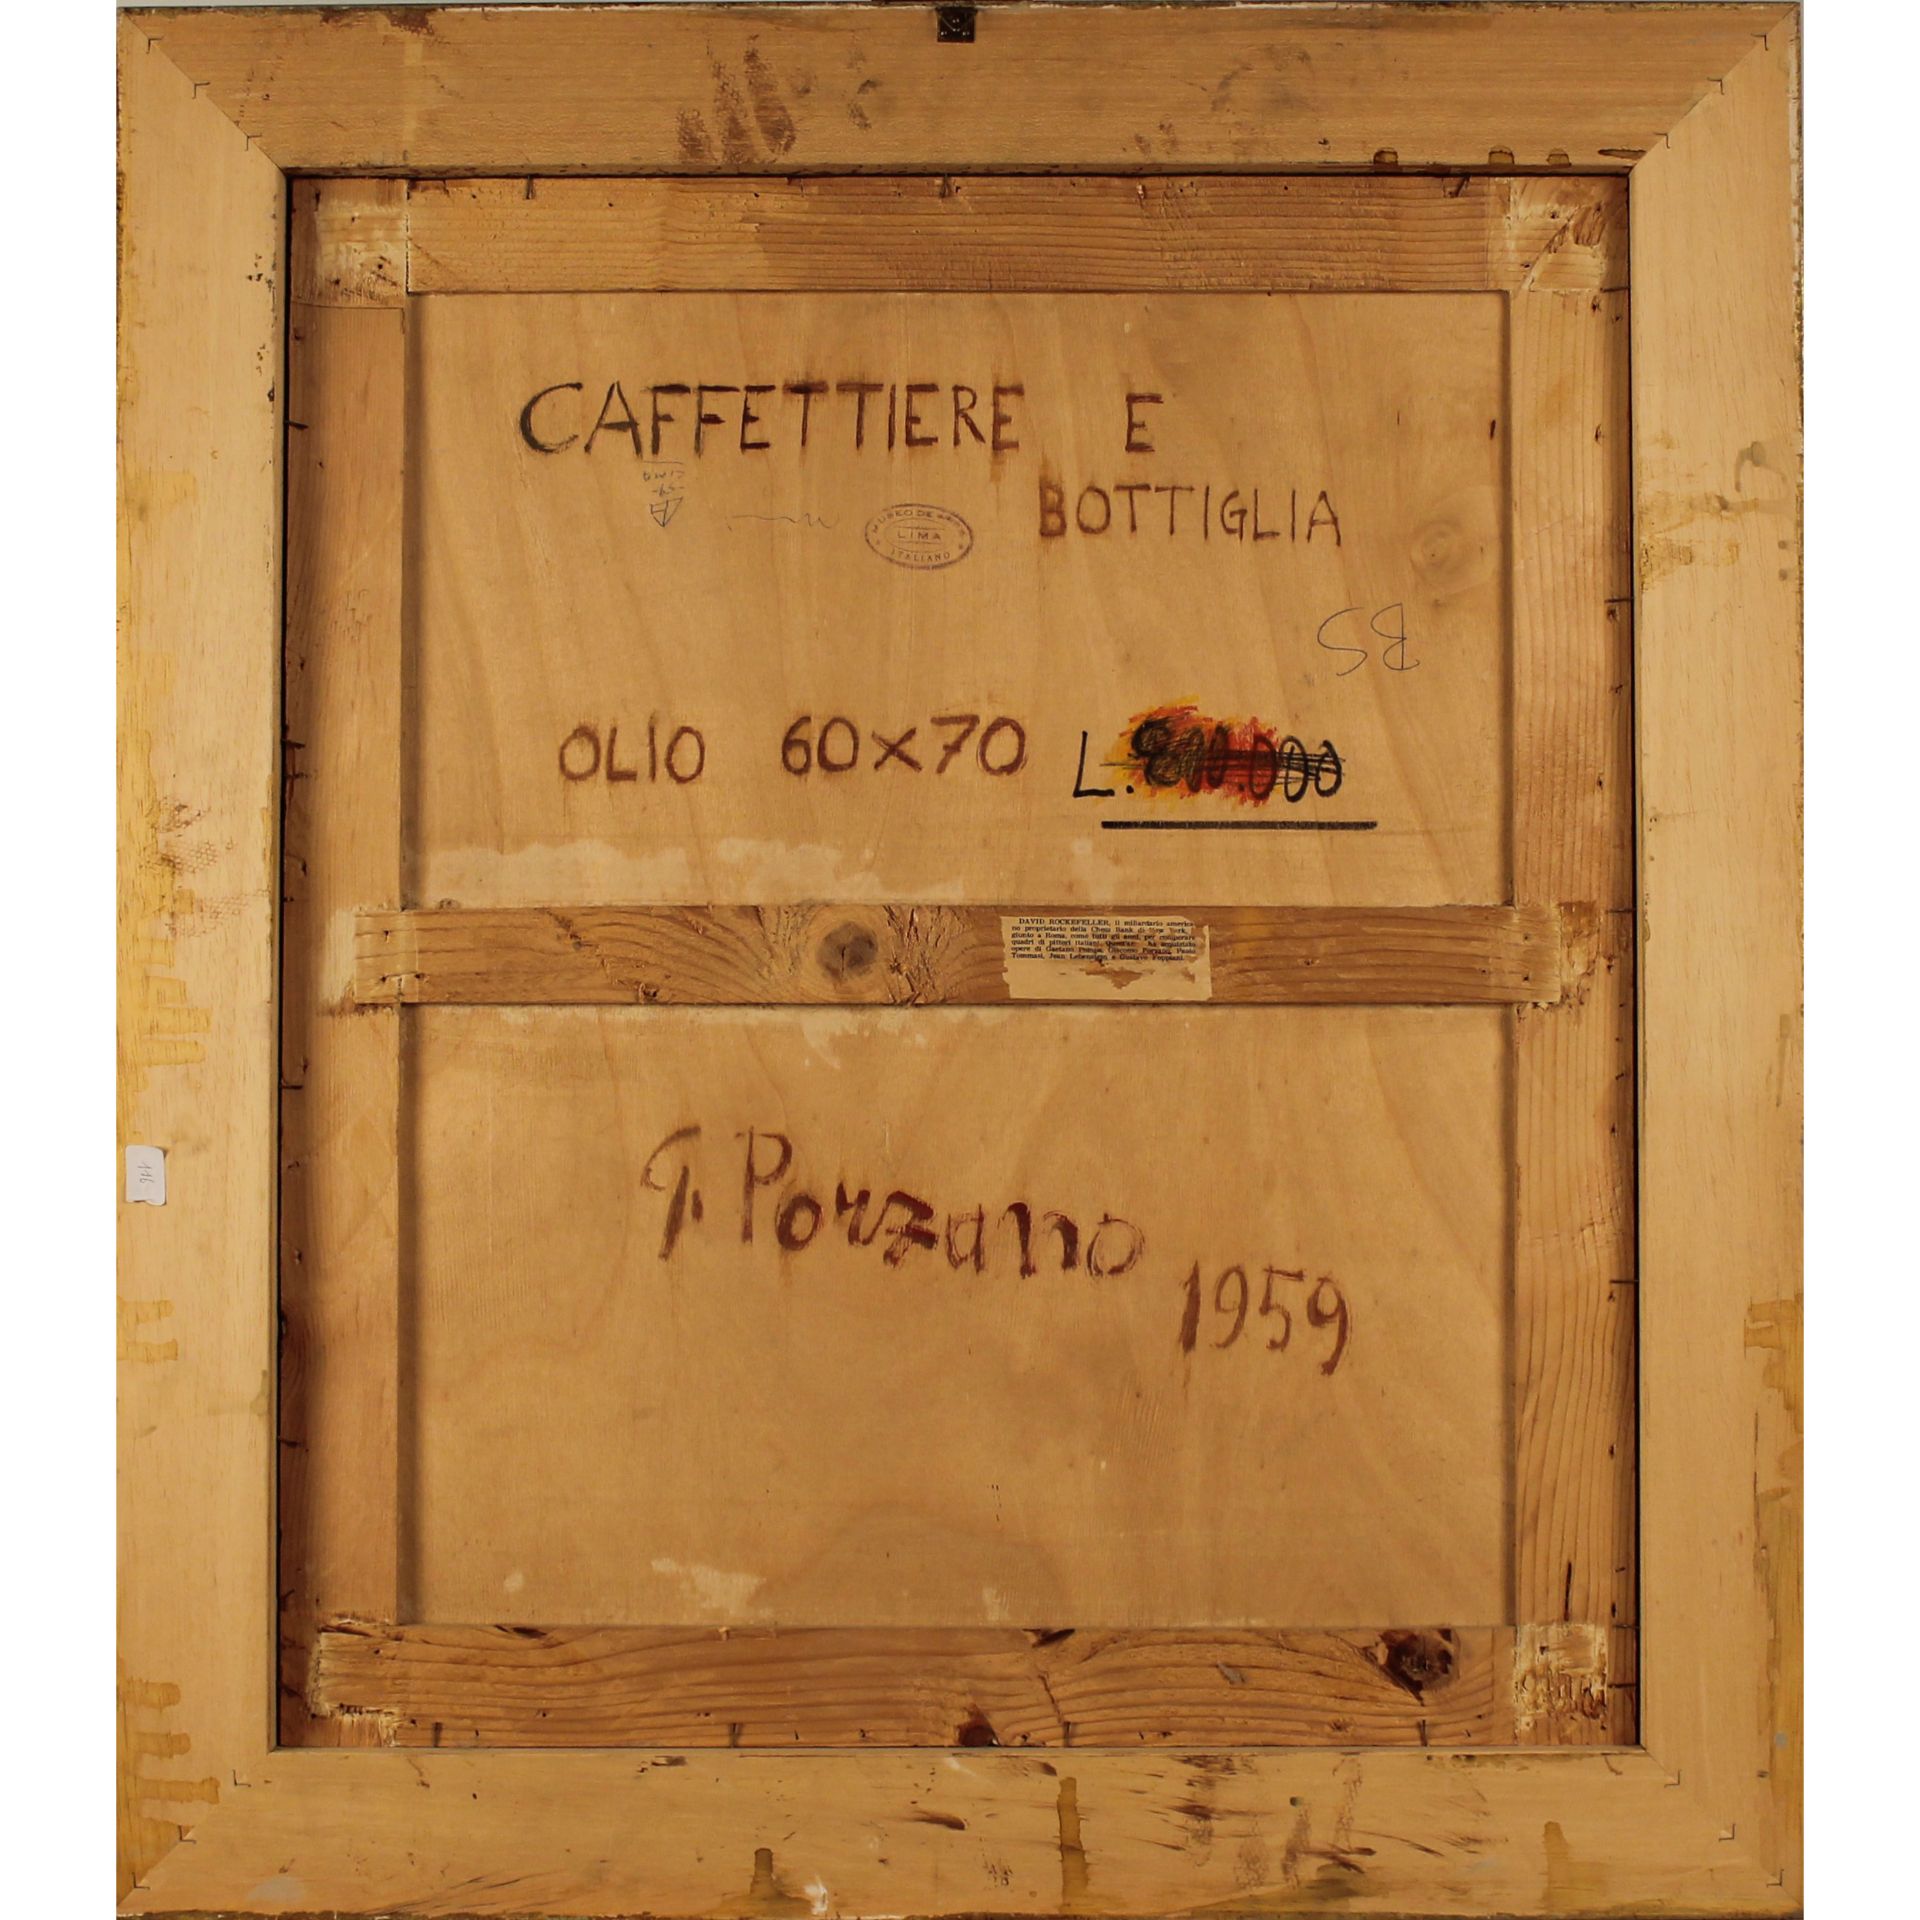 Giacomo Porzano (1925/2006) "Caffettiere e bottiglia" - "Coffee Pots and Bottle" - Image 2 of 2